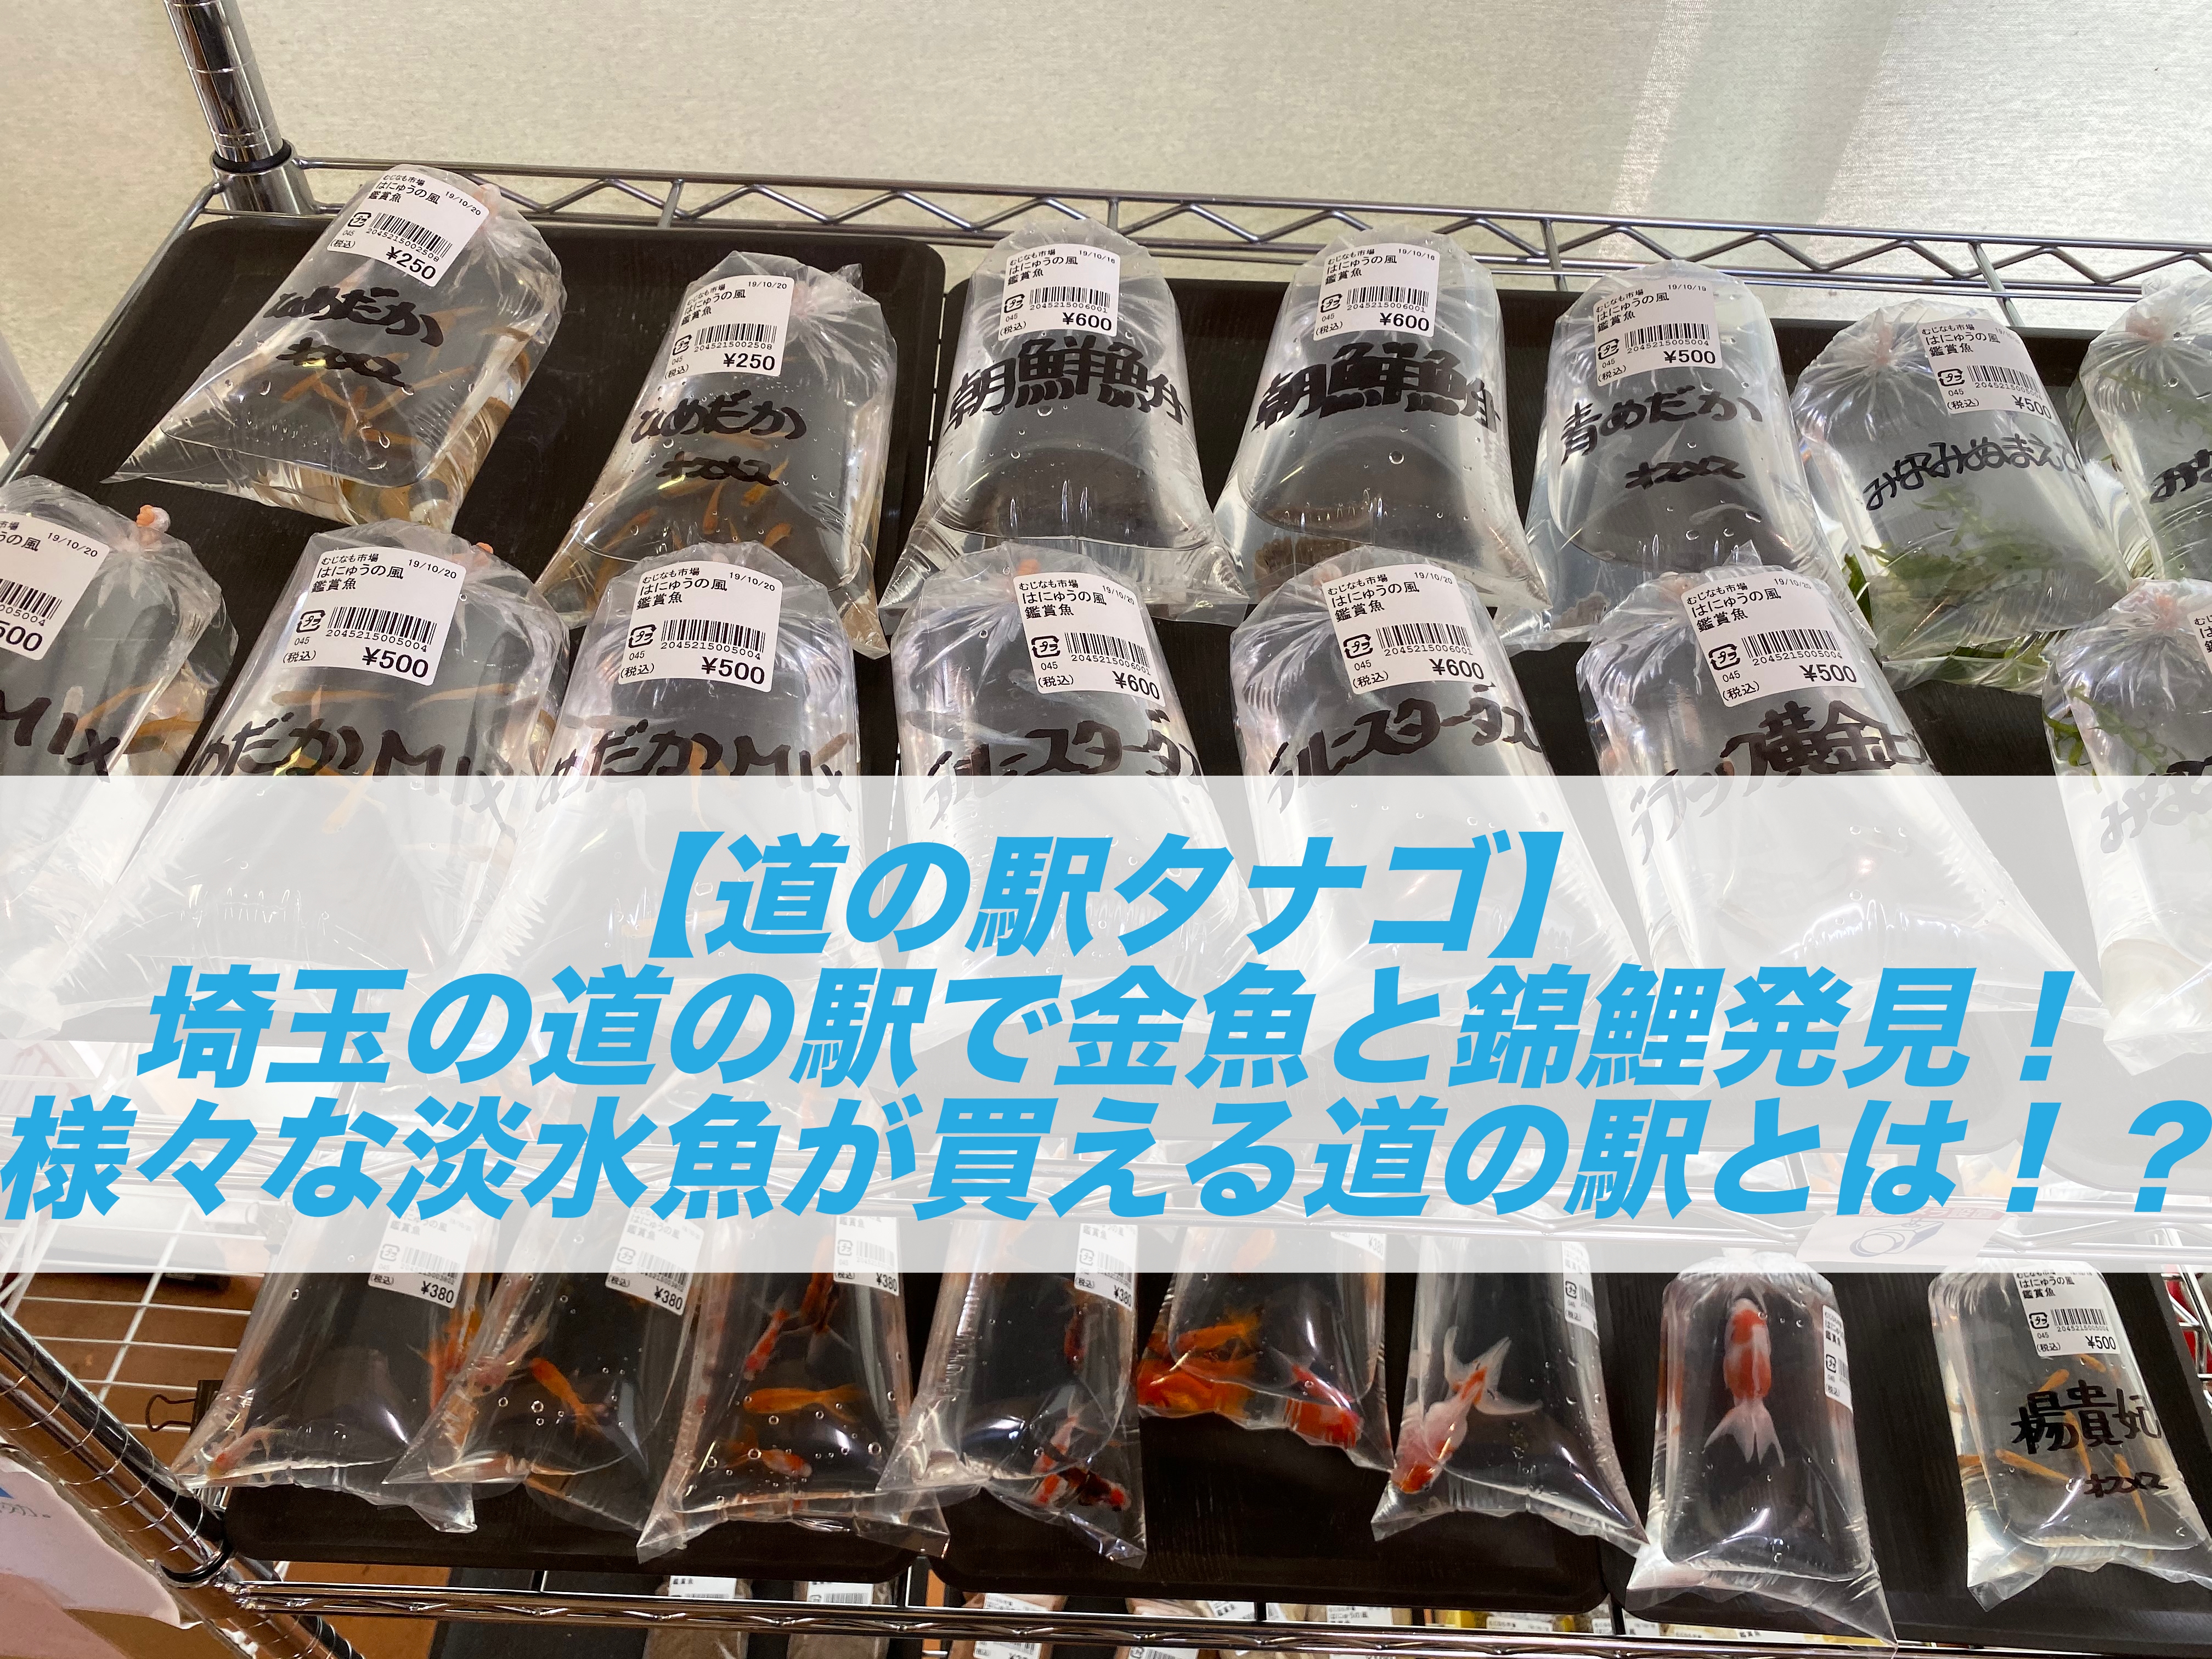 道の駅タナゴ 埼玉の道の駅で金魚と錦鯉発見 様々な淡水魚が買える道の駅とは ソウギョやナマズも しょーとかっとブログ